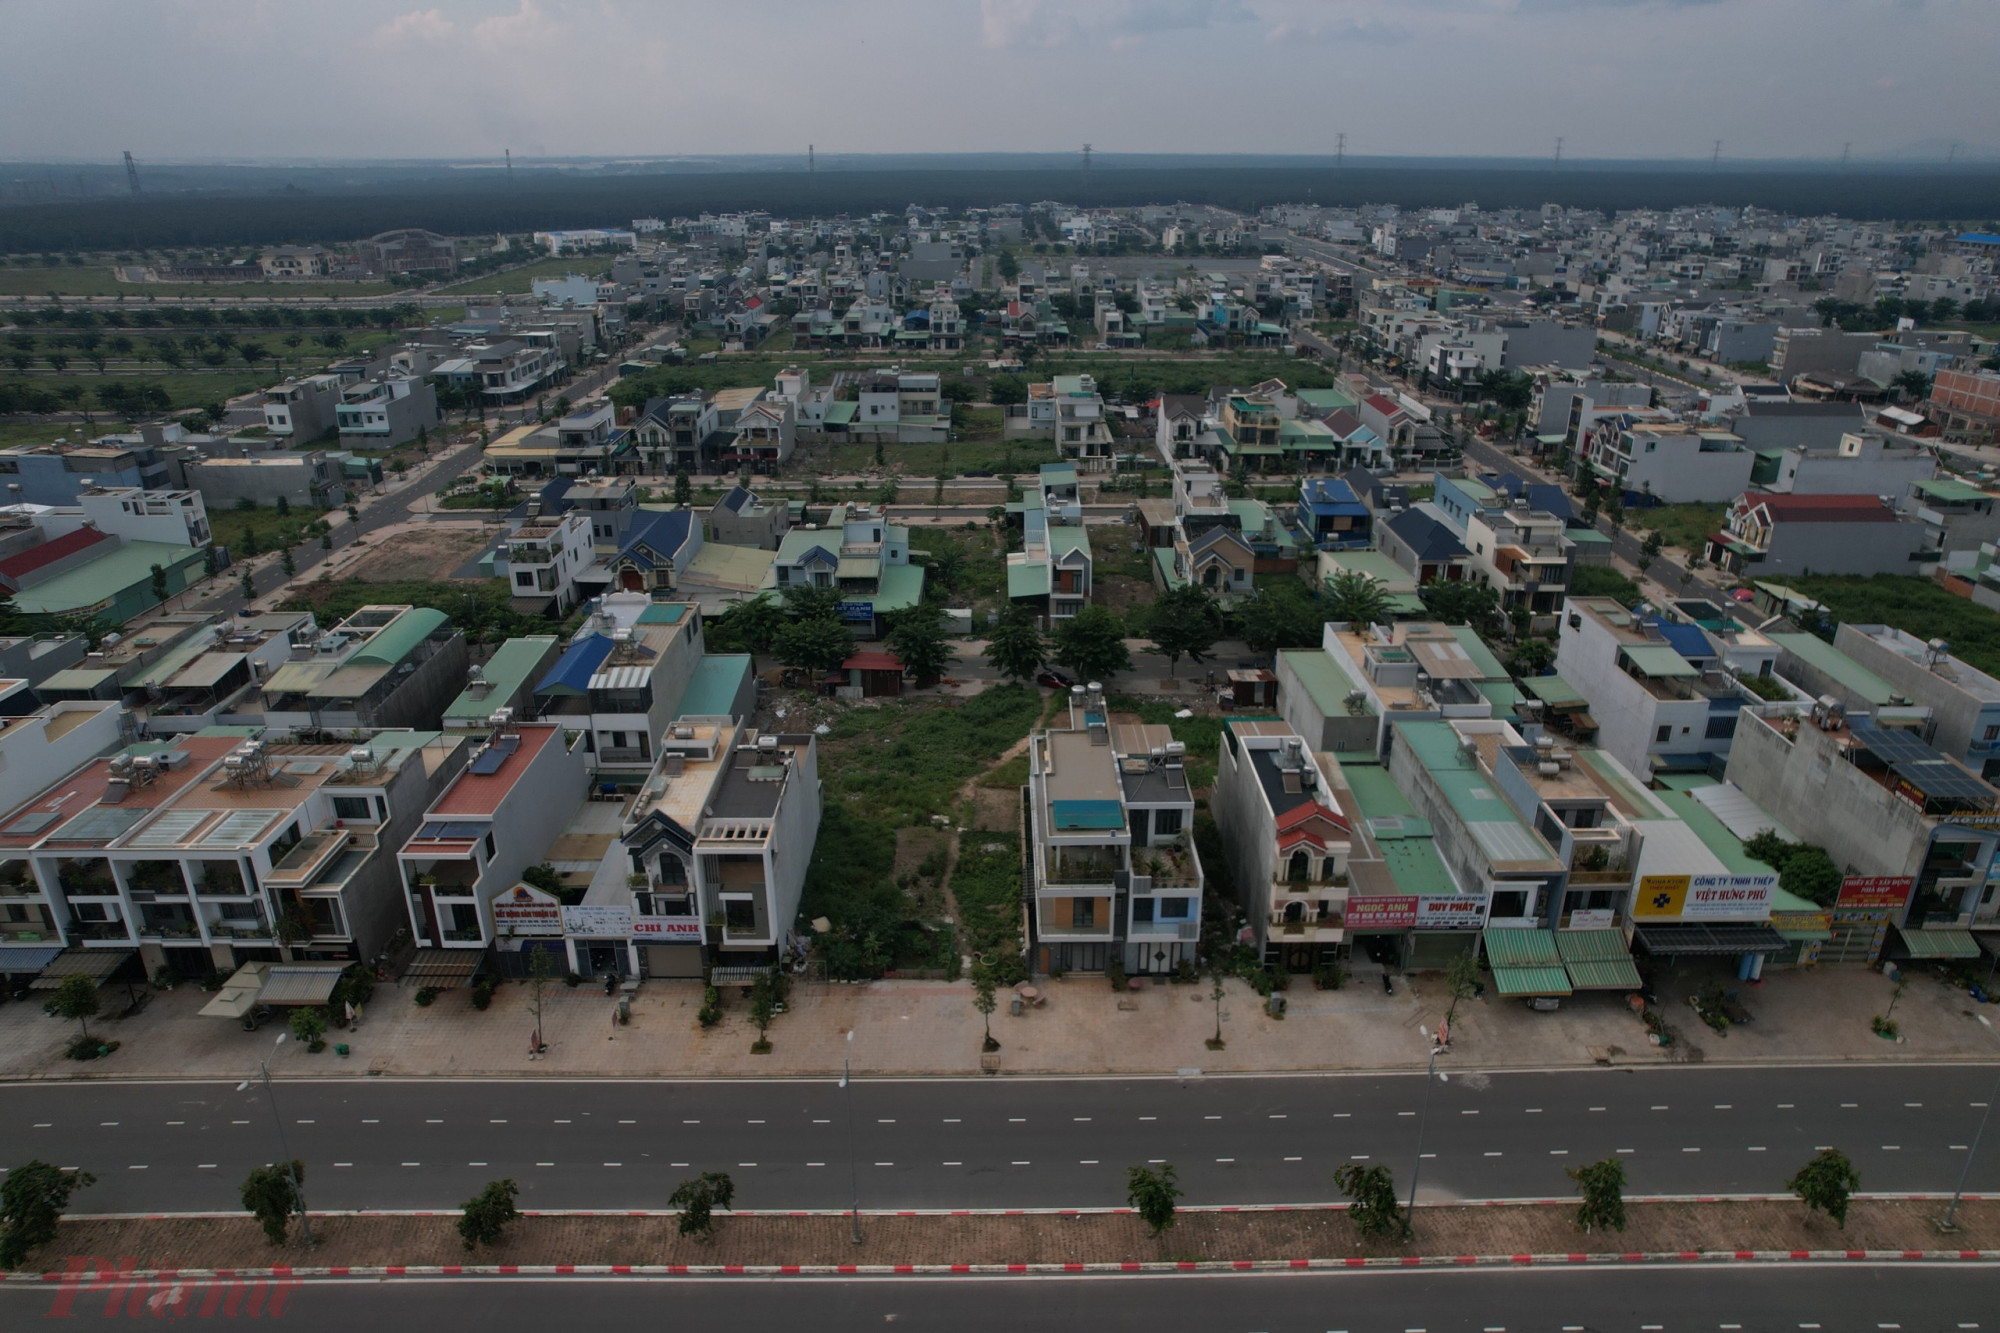 Sau Hiện nay khu tái định cư Lộc An - Bình Sơn đã có hàng ngàn căn nhà được xây dựng khang trang, cuộc sống người dân cũng đã dần ổn định. 